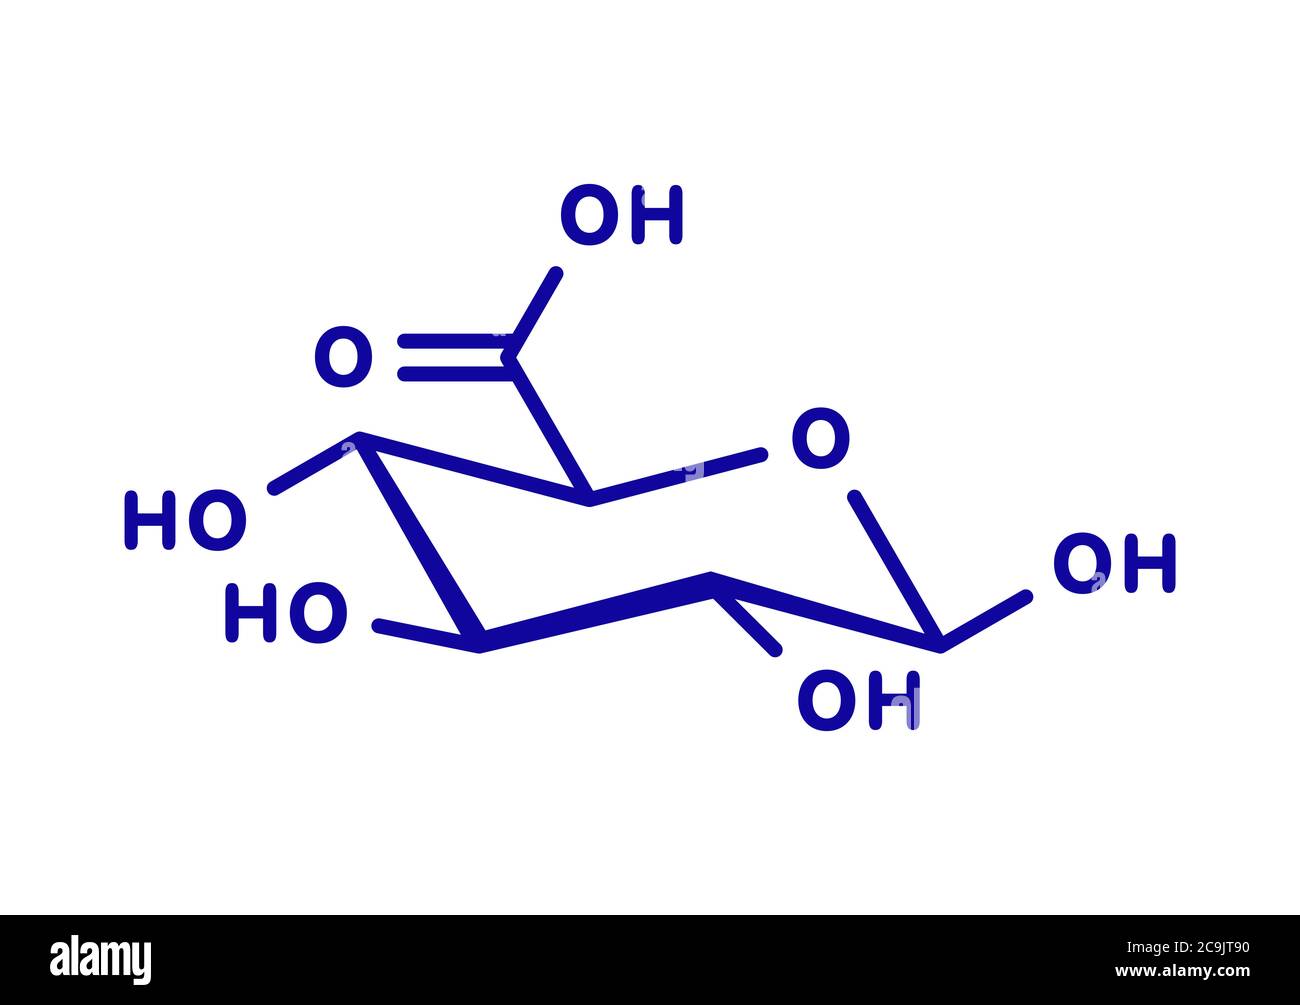 Molécule d'acide glucuronique. La glucuronoconjugaison des xénobiotiques jouent un rôle dans le métabolisme des médicaments, donnant des glucuronides. Formule topologique bleu sur fond blanc Banque D'Images